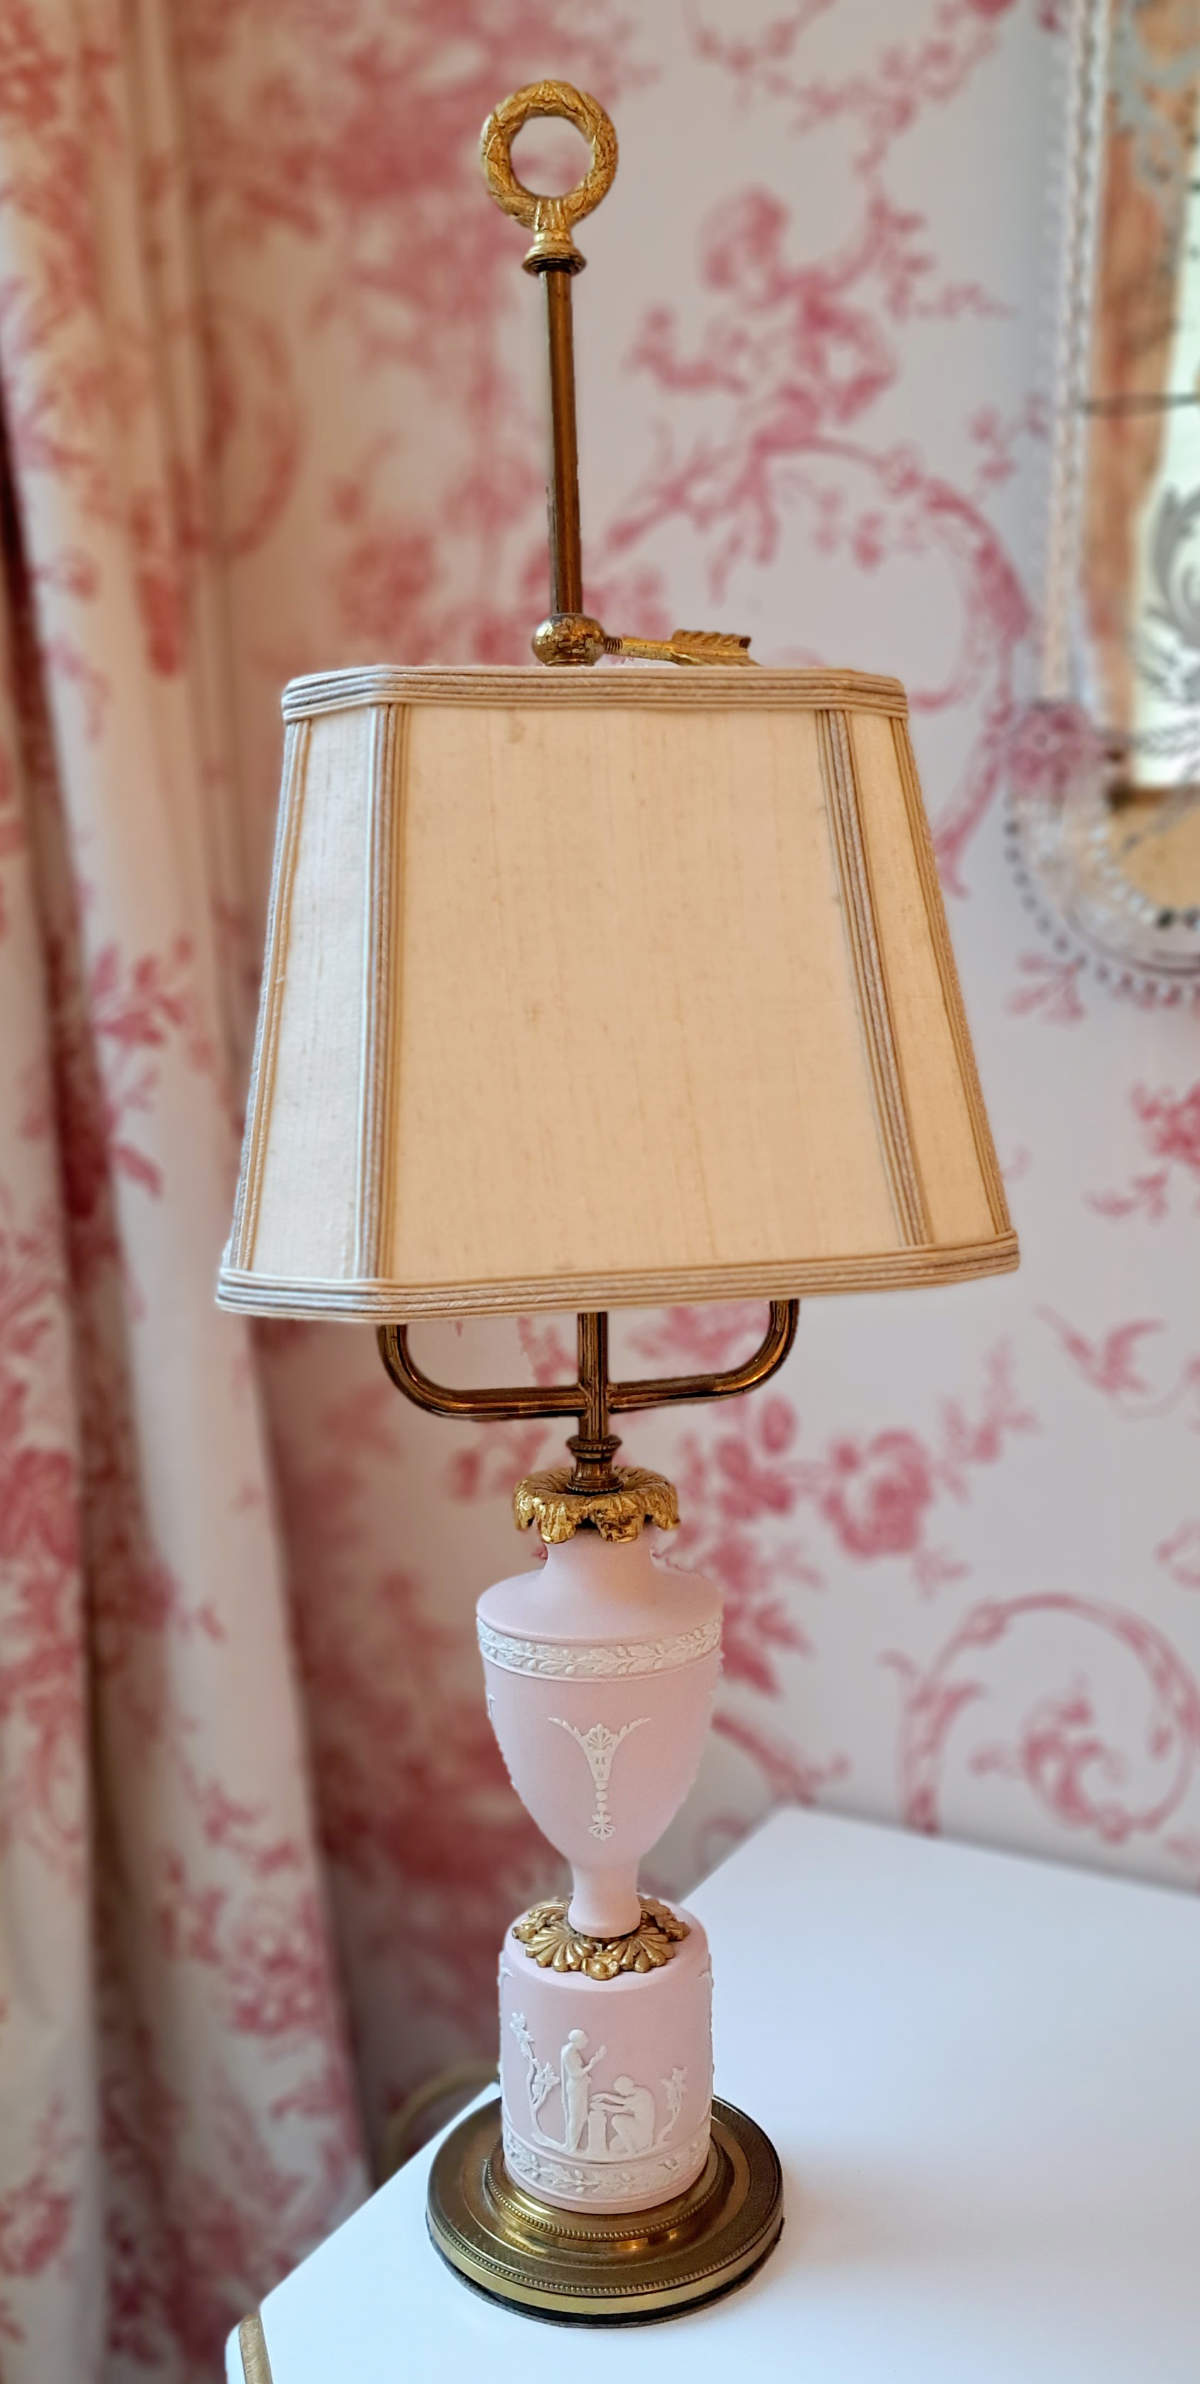 Tischlampe mit Fuß aus Biskuit Porzellan, aus dem 19. Jahrhundert, aus Italien, Vasenform, mit Messing, Frontalansicht.